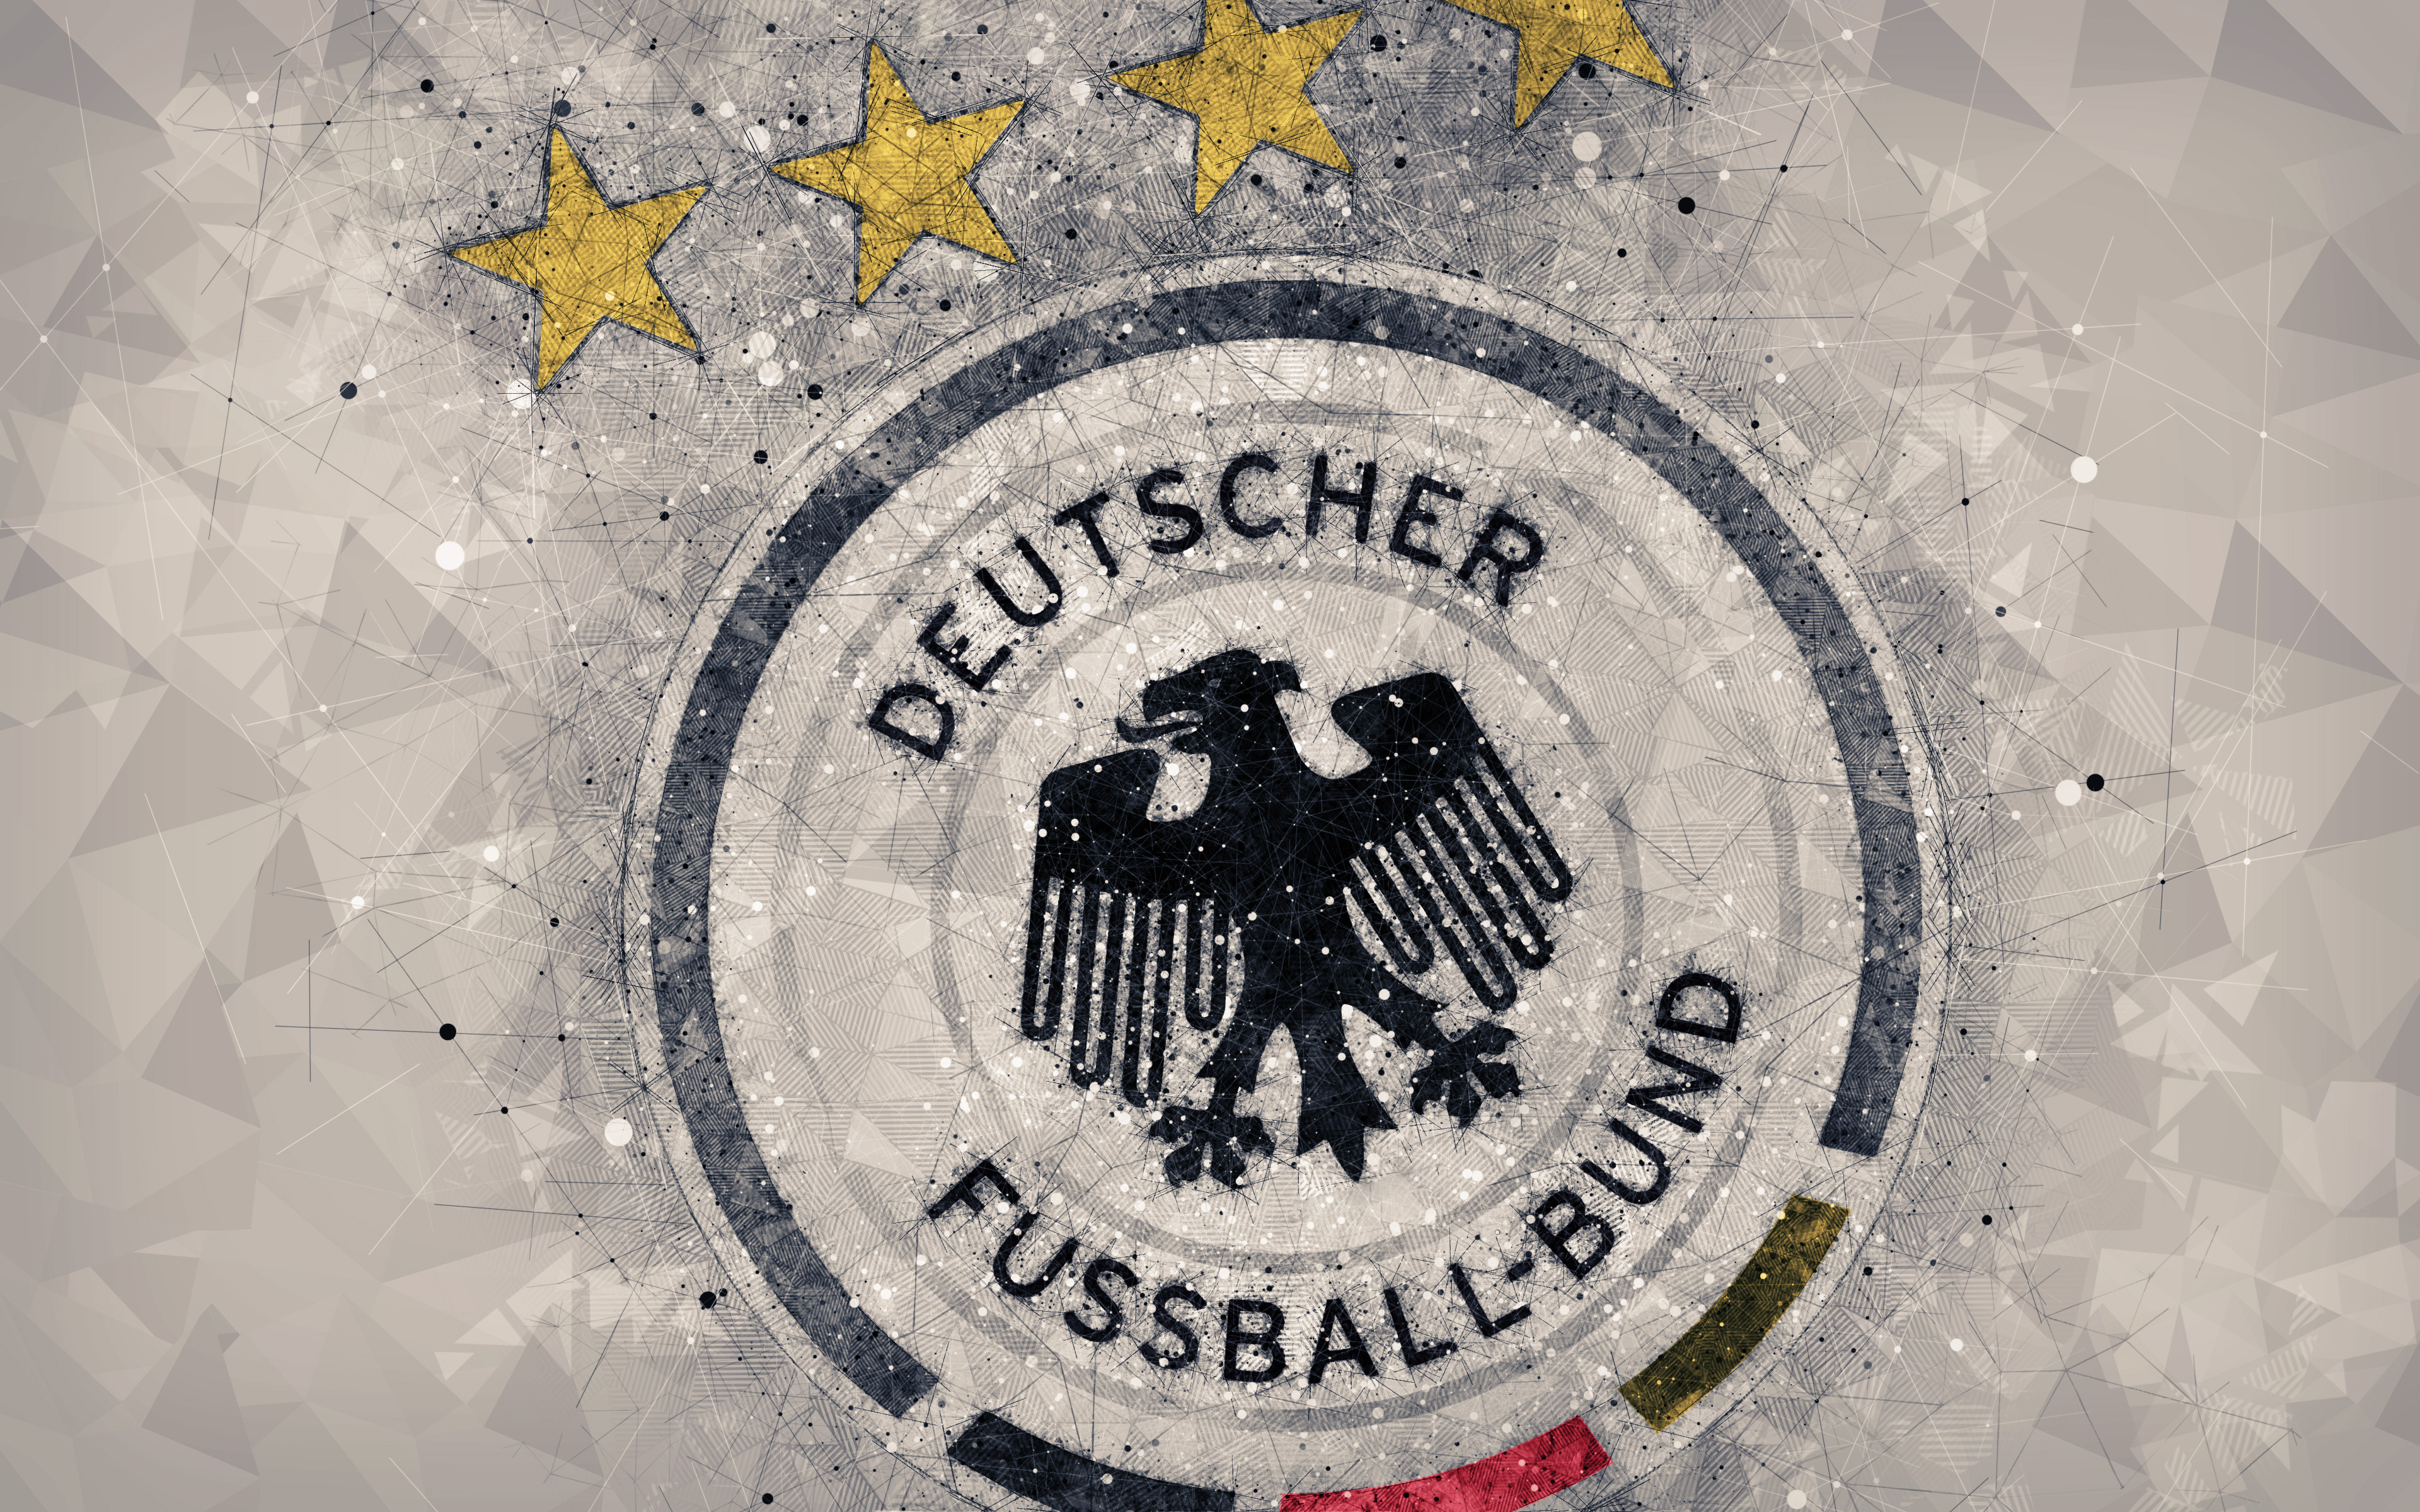 Скачать обои Сборная Германии По Футболу на телефон бесплатно